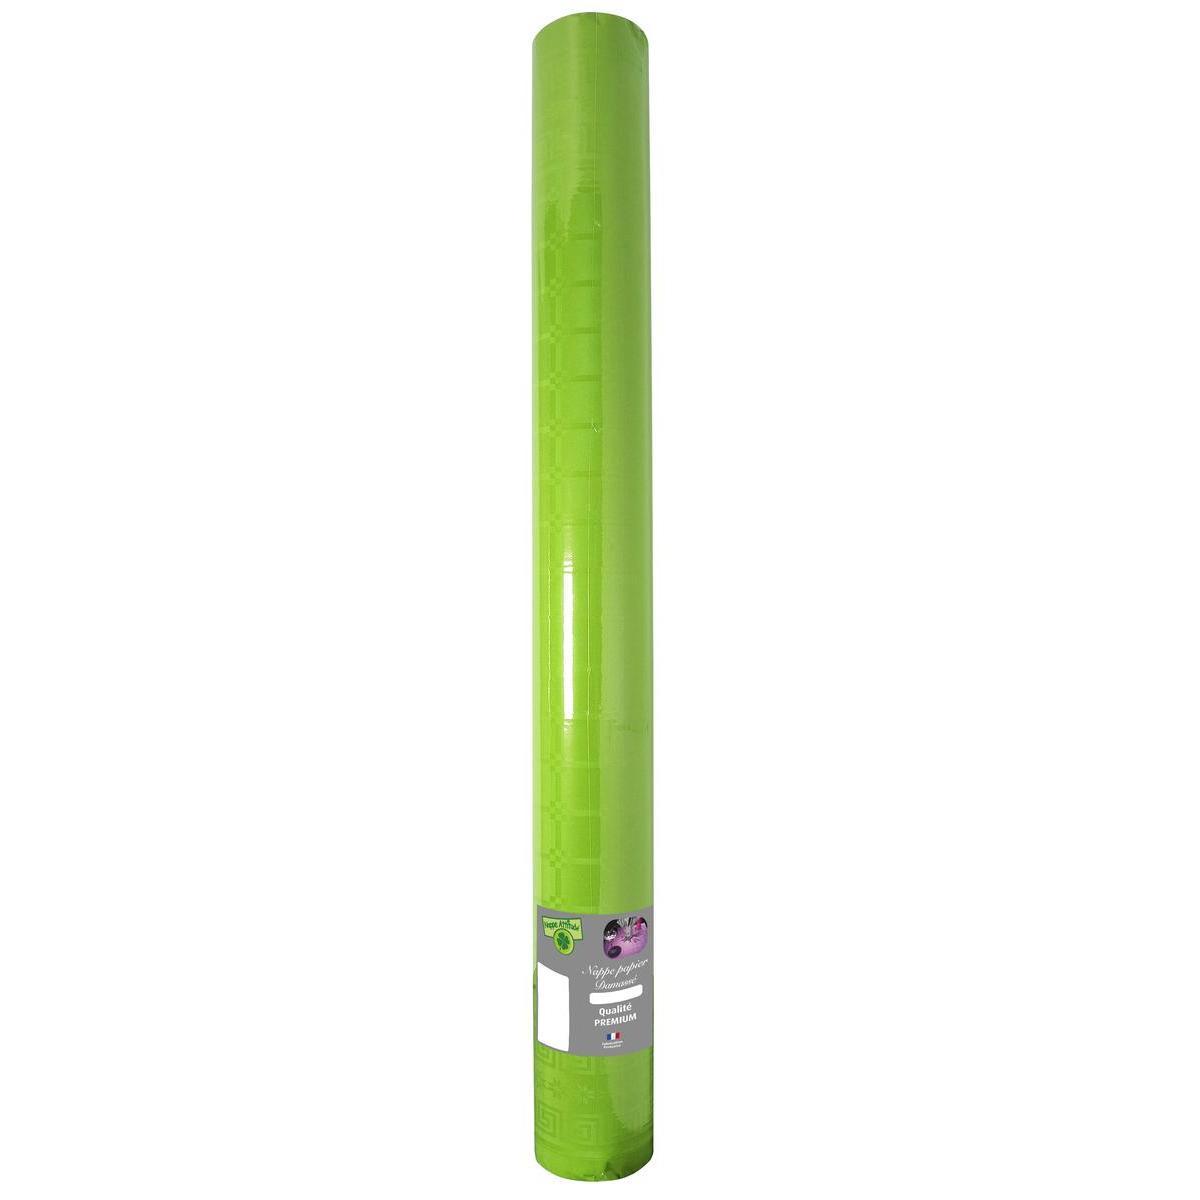 Nappe effet damassé - Papier - 20 m x 120 cm - Vert kiwi